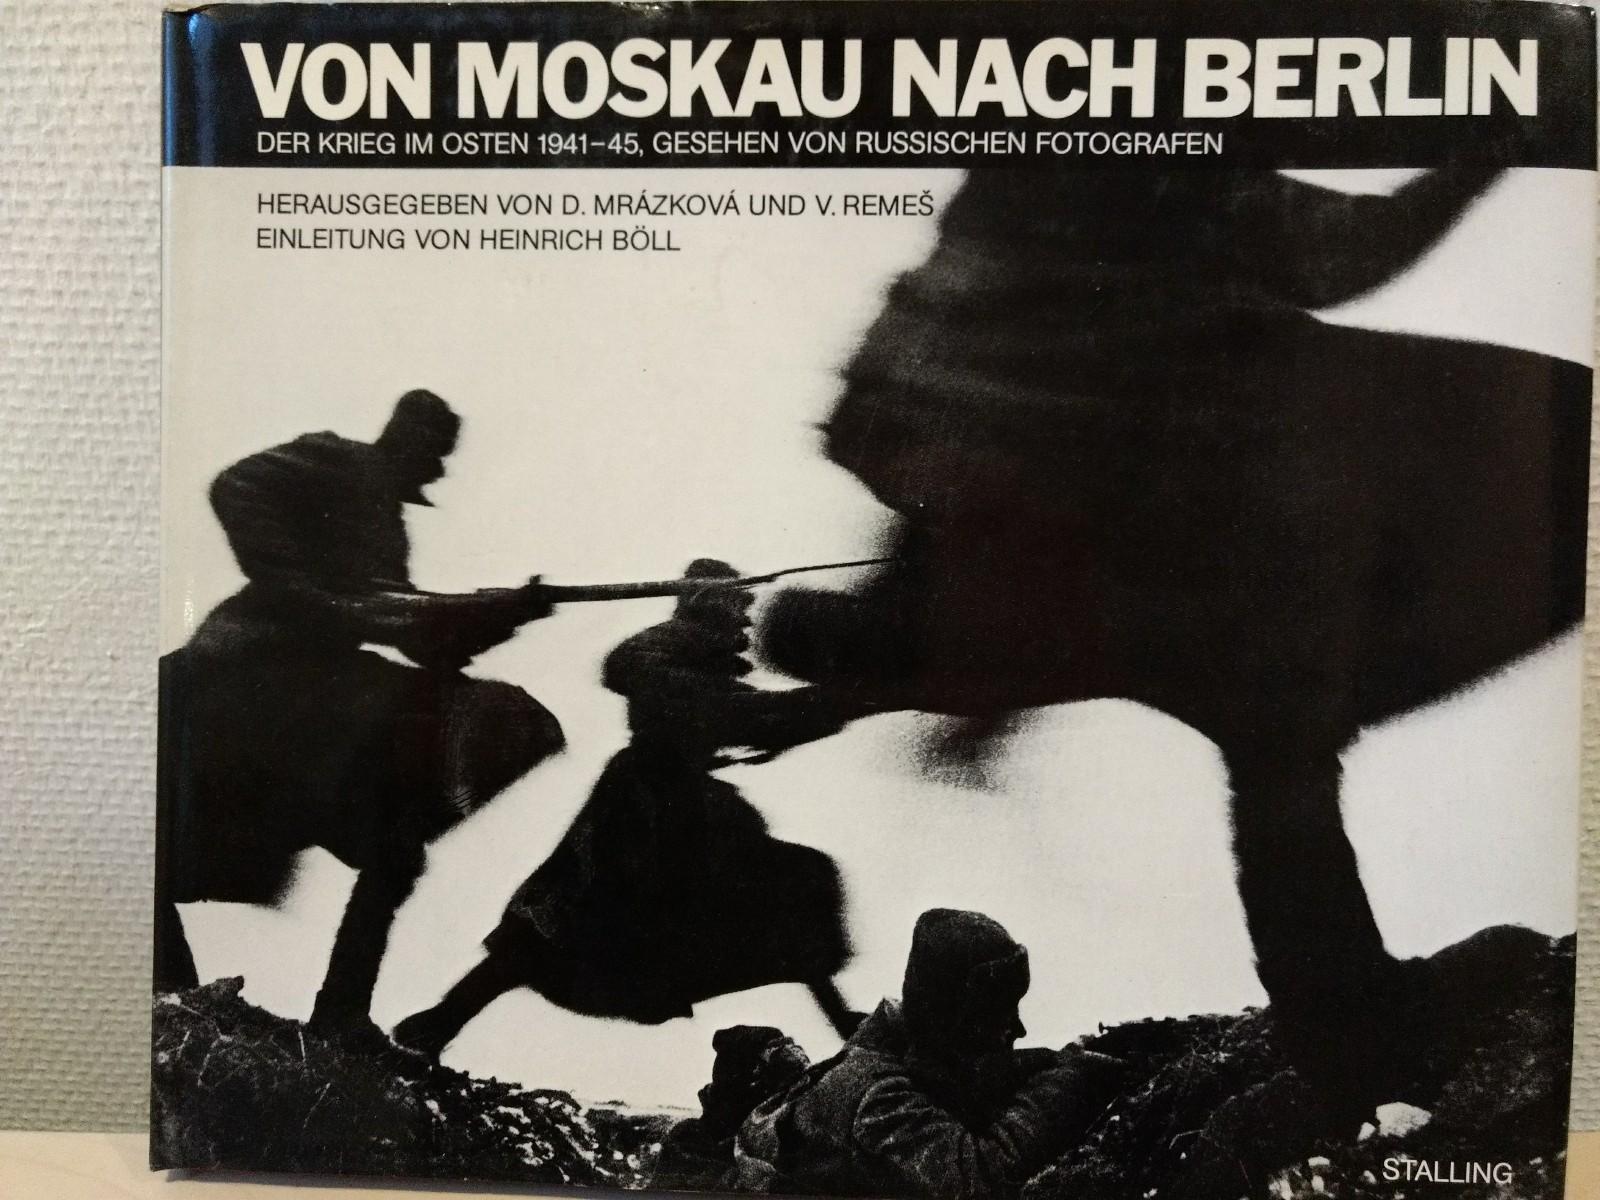 Von Moskau nach Berlin. Der Krieg im Osten 1941-45, gesehen von russischen Fotografen. Mit einer Einleitung von Heinrich Böll - Mrazkova, D. und V. Remes